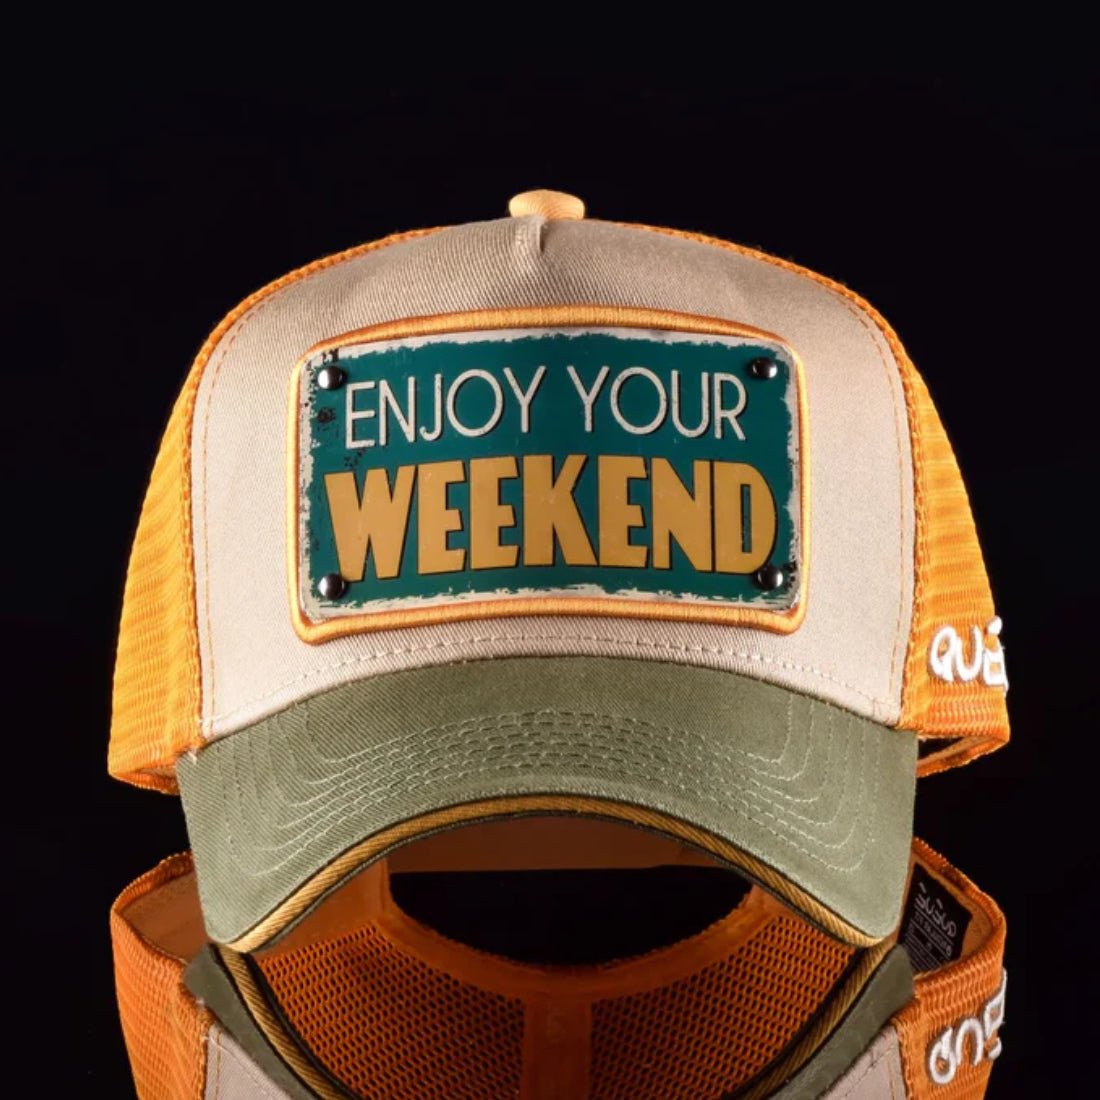 Queue Caps Enjoy Your Weekend Cap - Green & Beige - قبعة - Store 974 | ستور ٩٧٤